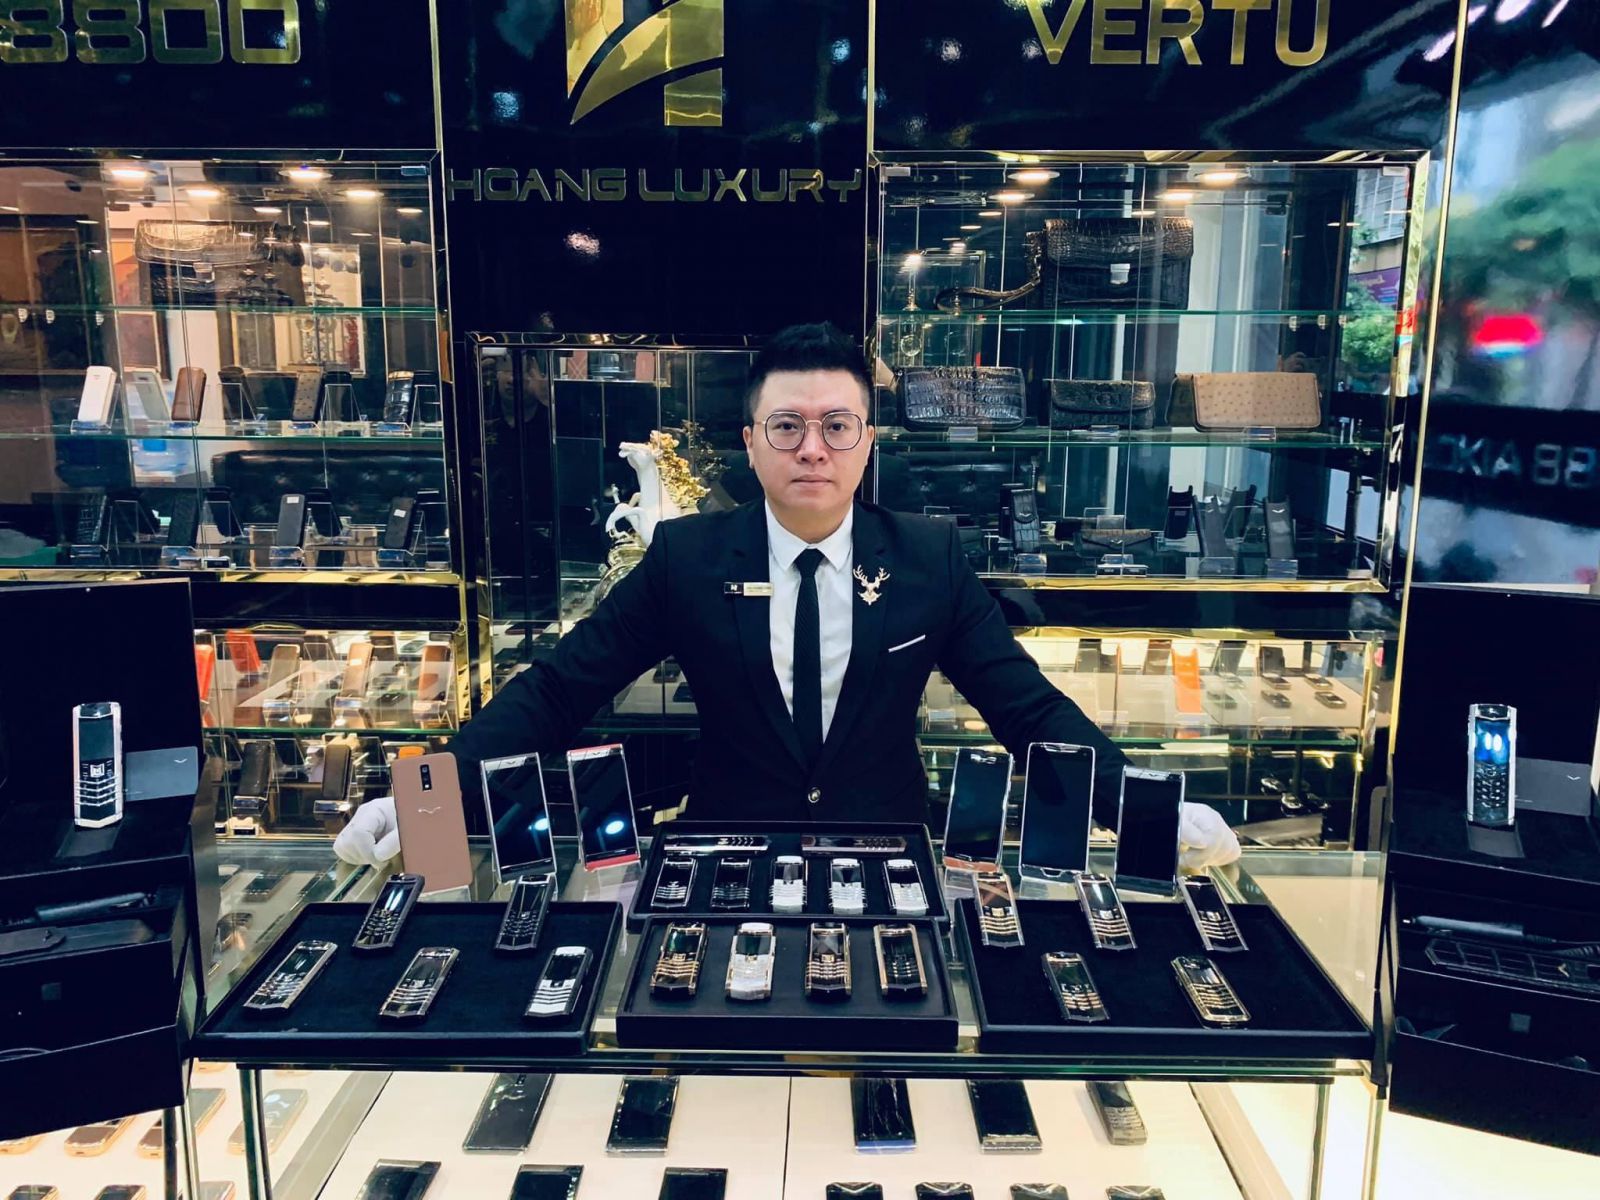 Hoàng Luxury chuyên điện thoại Vertu chính hãng